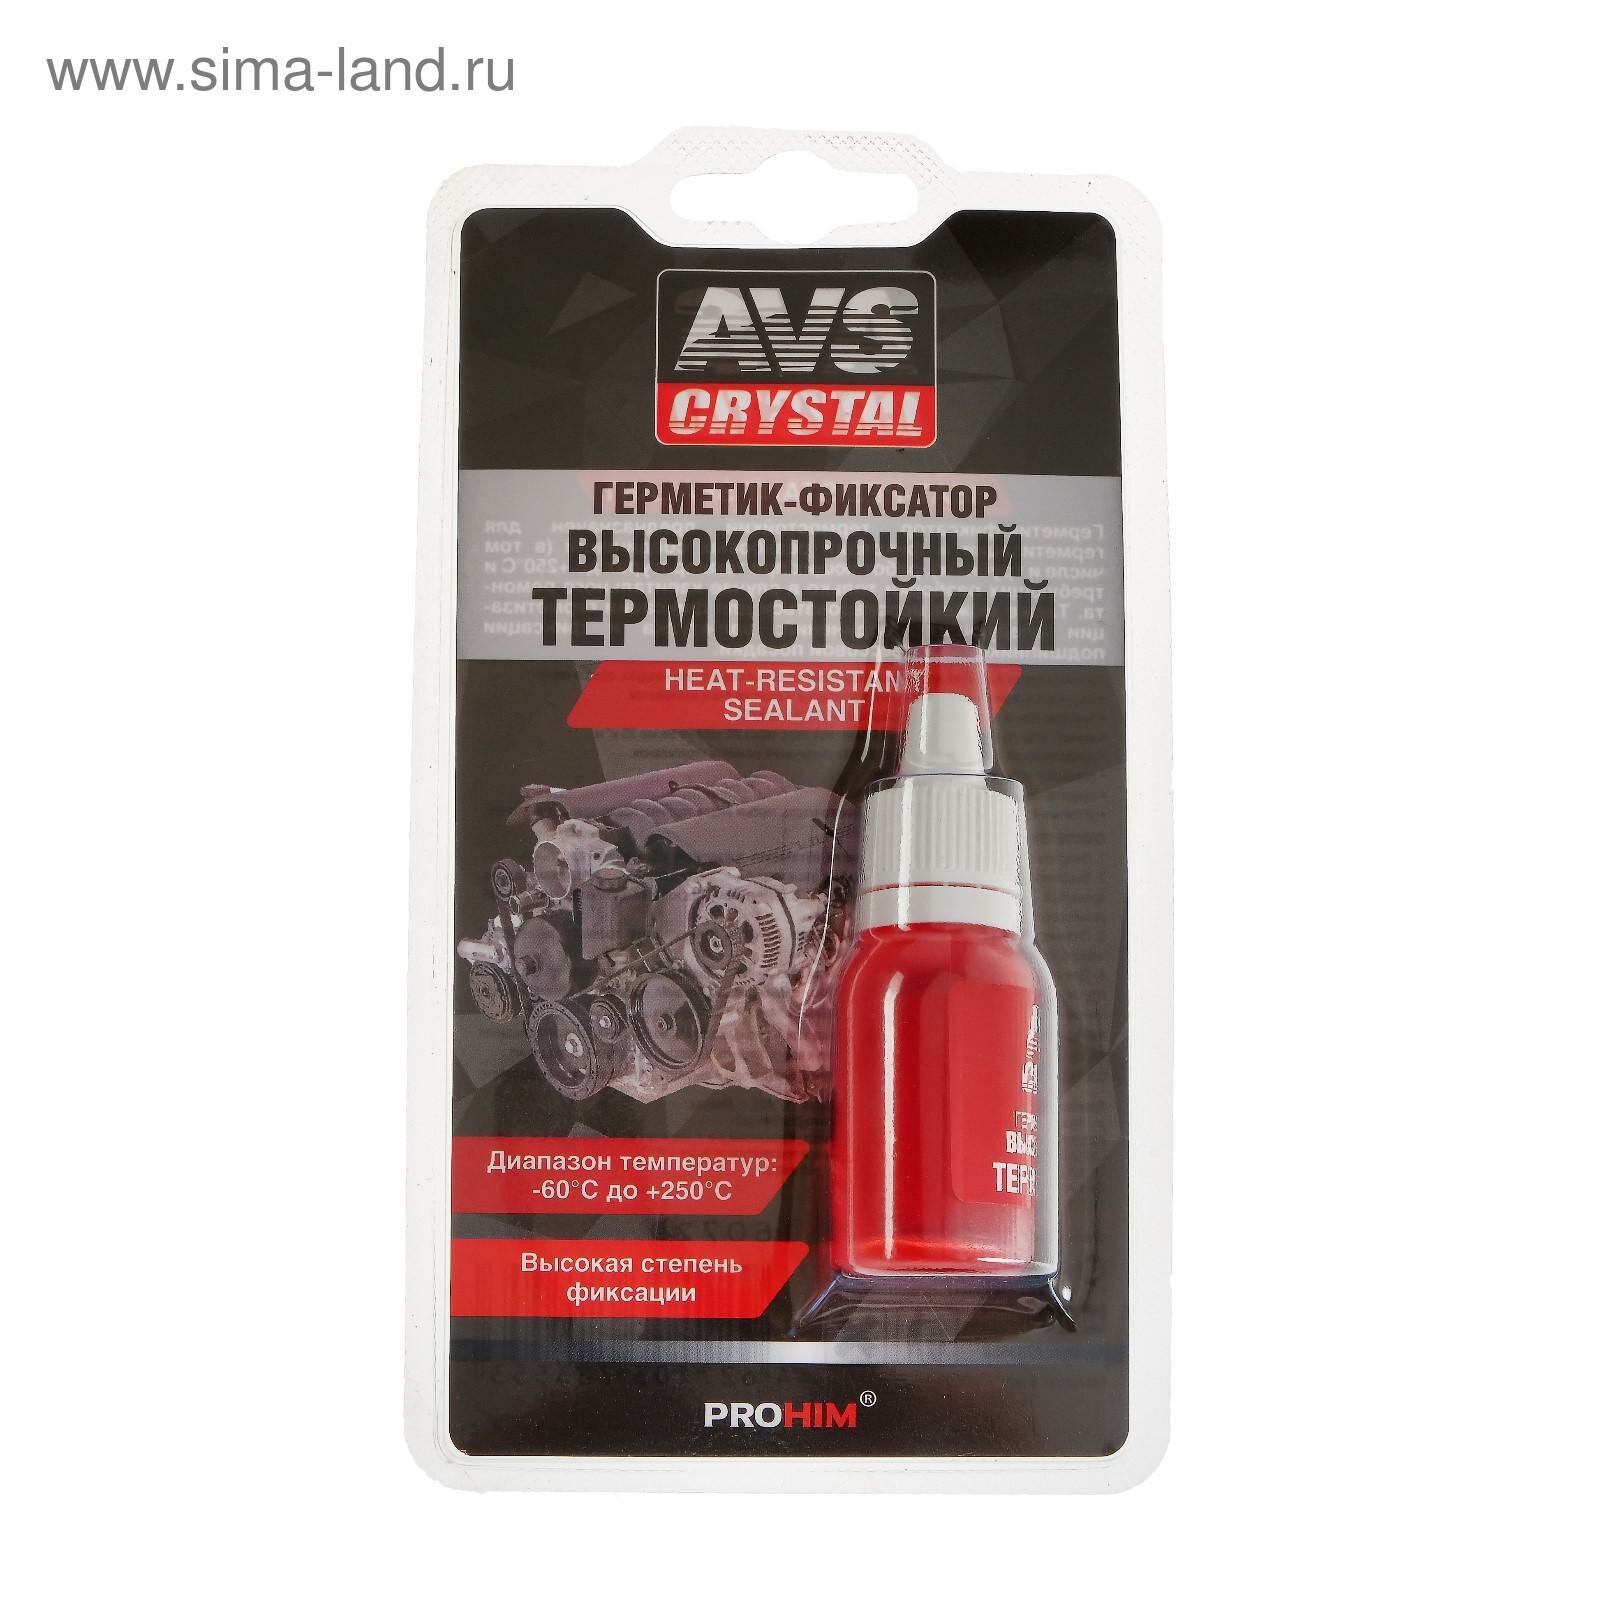 Герметик-фиксатор AVK-131 высокопрочный термостойкий 6 мл